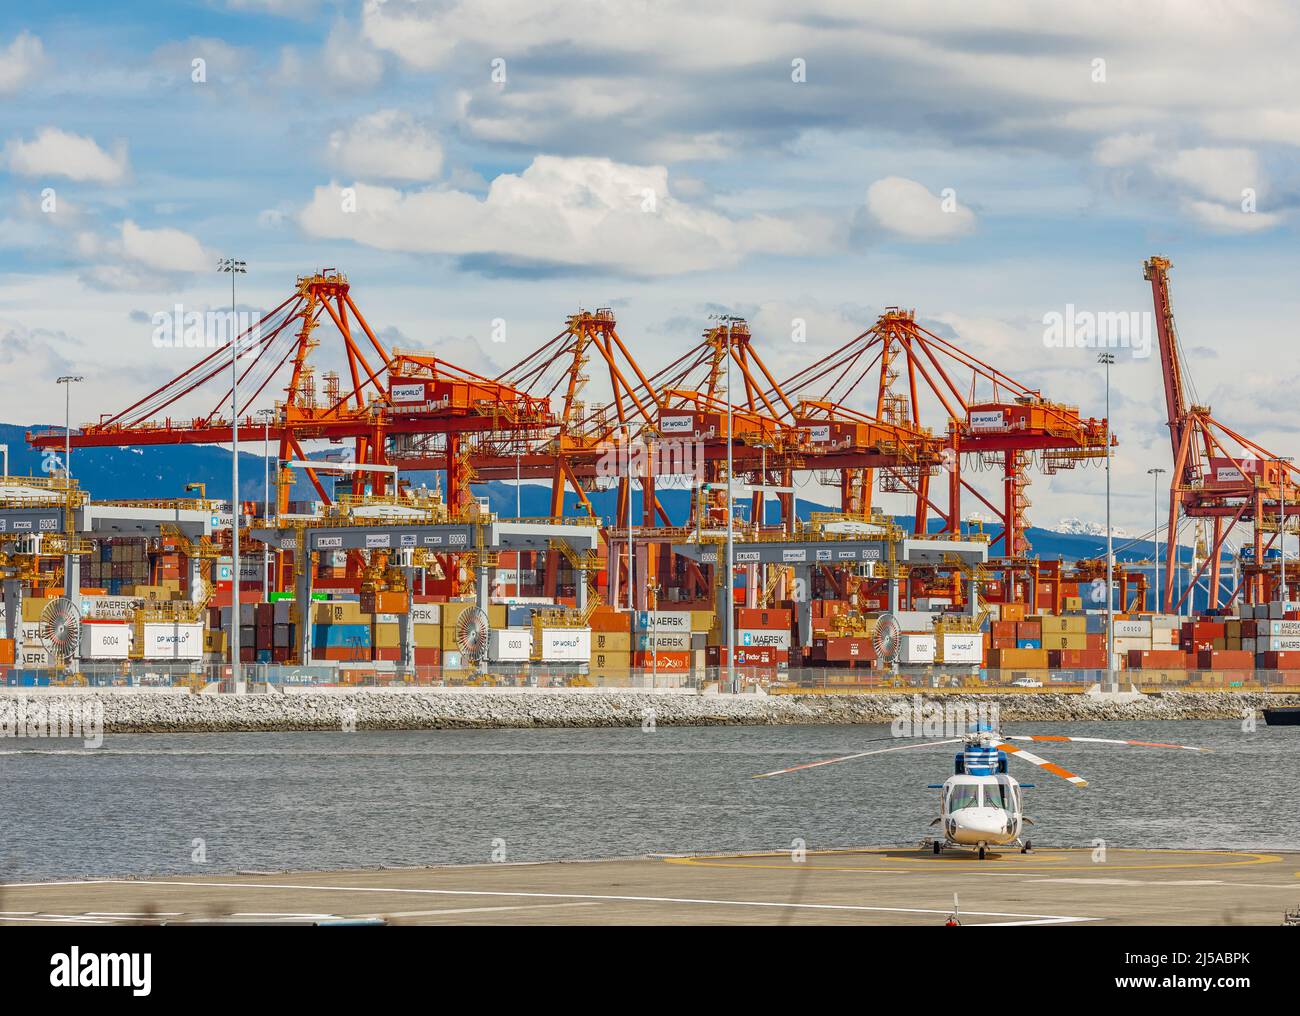 Containerhafenterminal in Vancouver BC, Kanada - einer der drei wichtigsten Häfen an der Westküste Nordamerikas - April 11,2022. Straßenansicht, Reisefoto Stockfoto